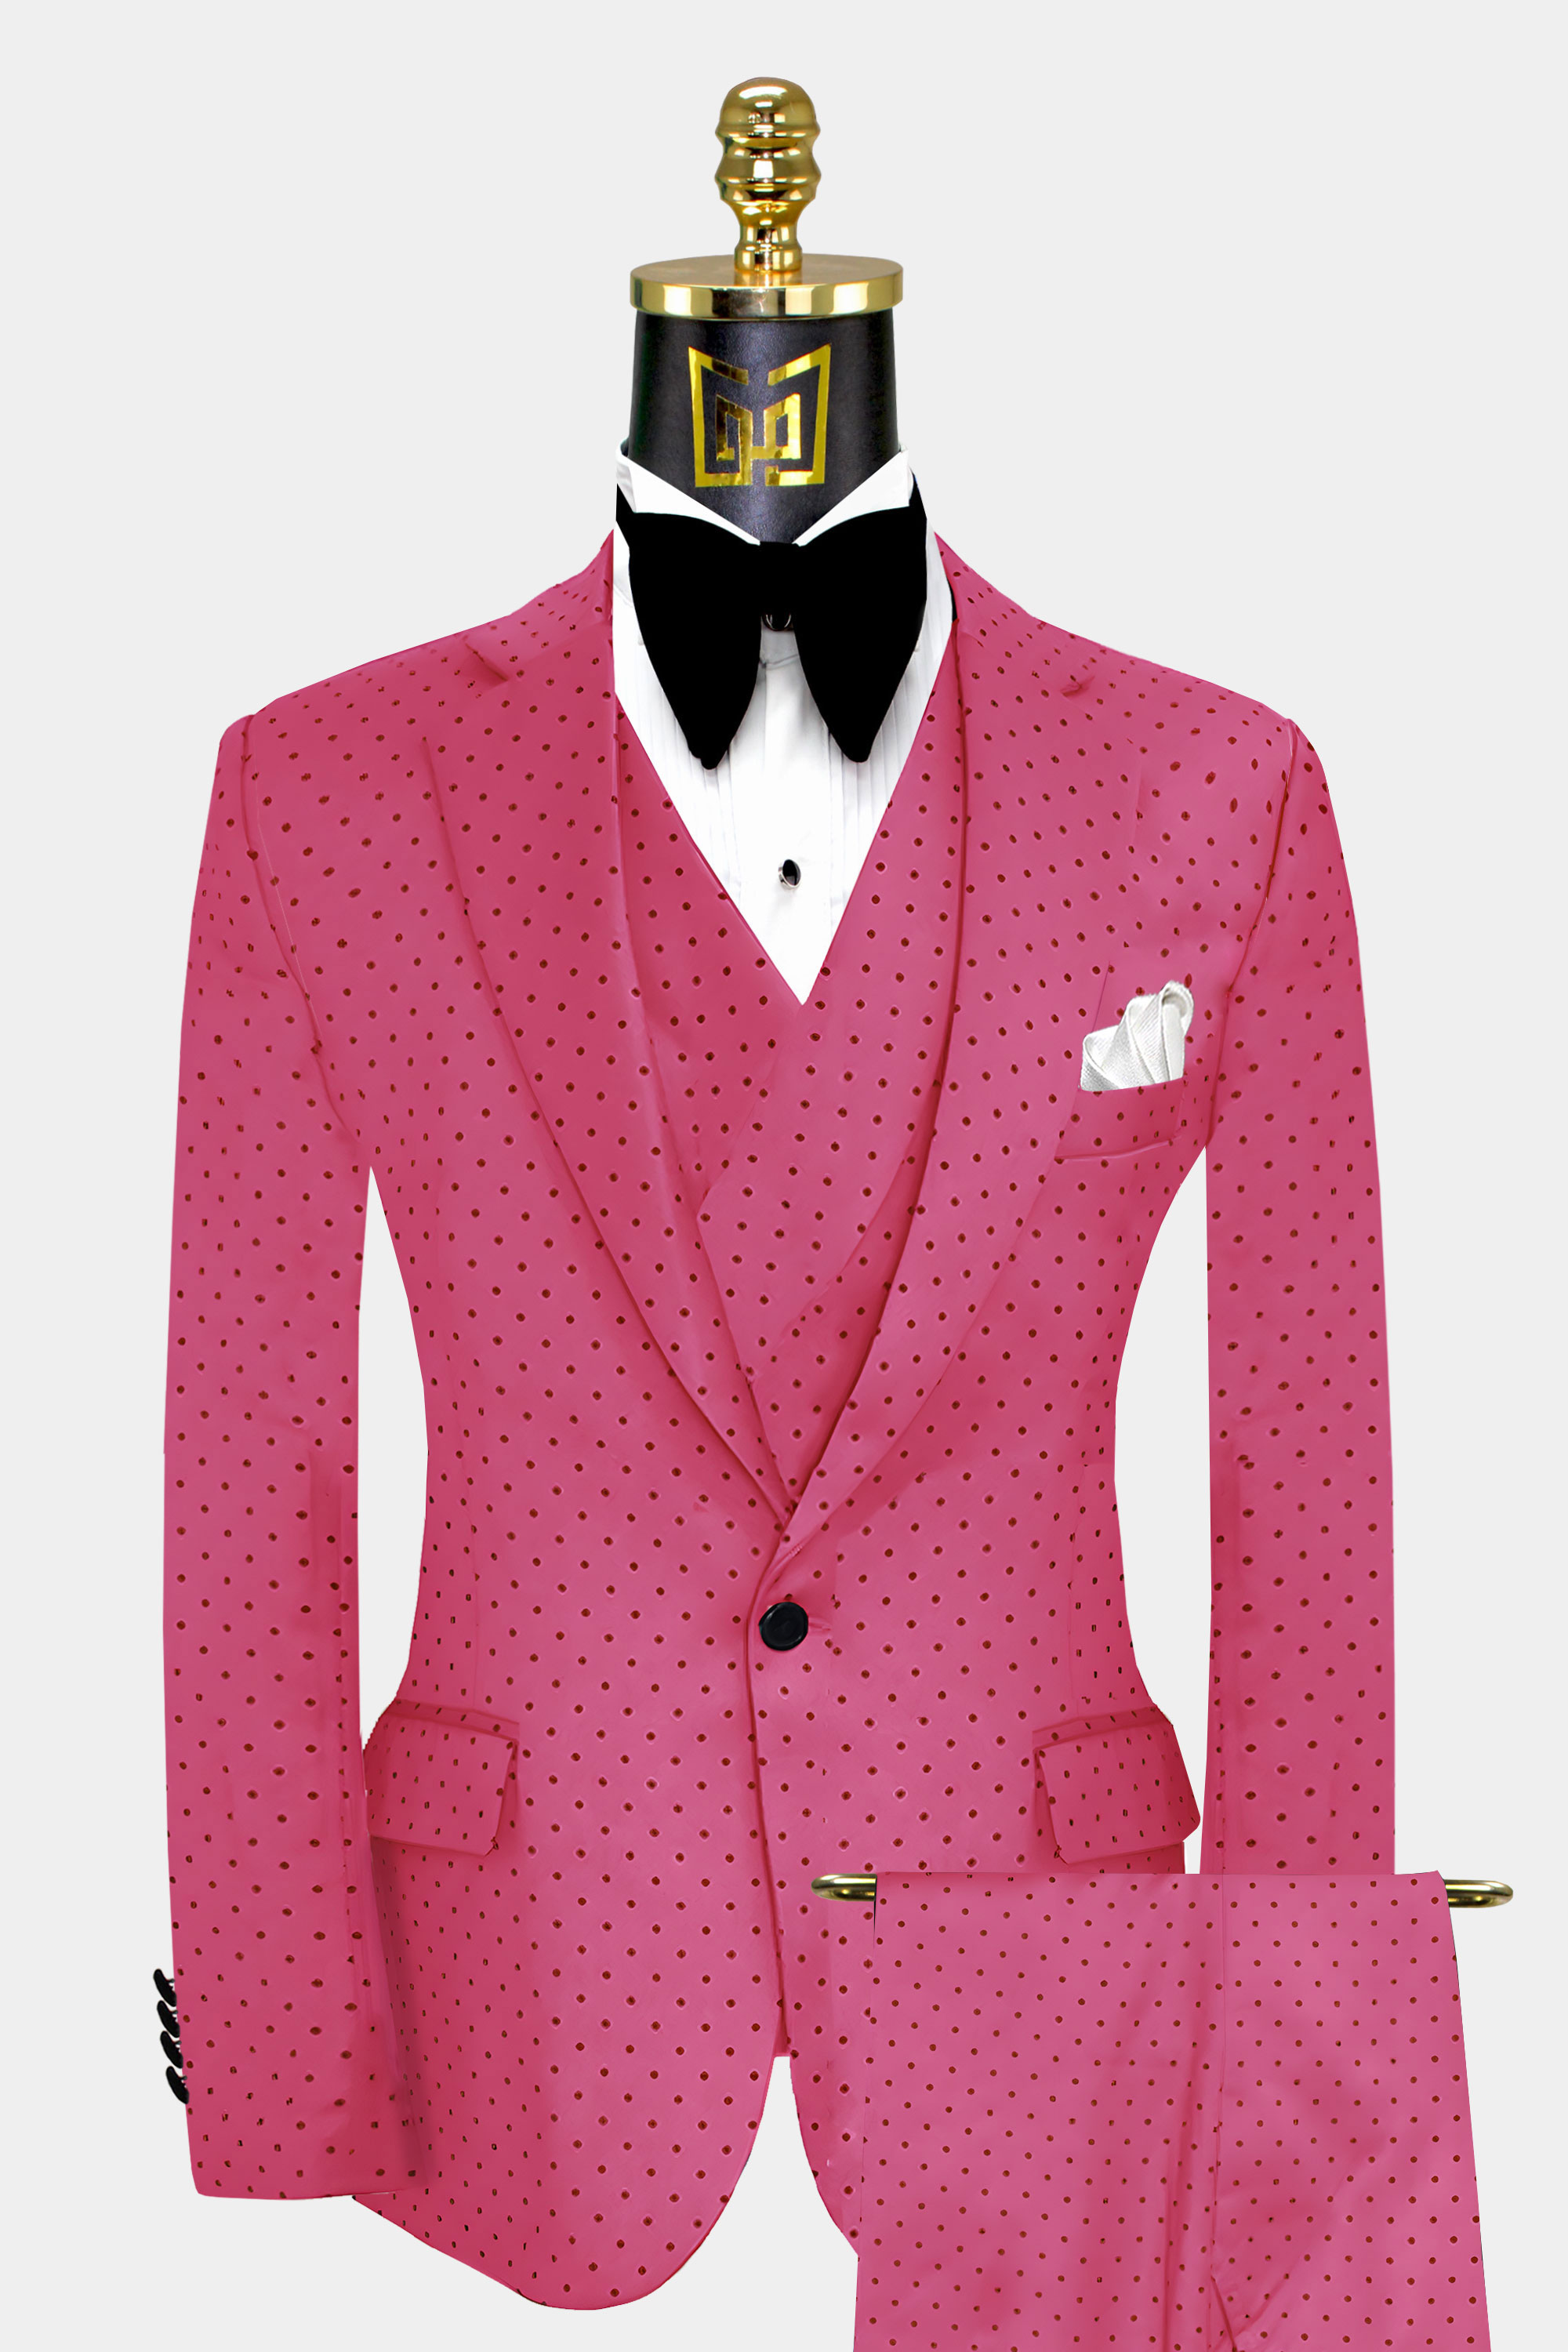 Mens-Hot-Pink-Suit-Groom-Wedding-Prom-Tuxedo-from-Gentlremansguru.com